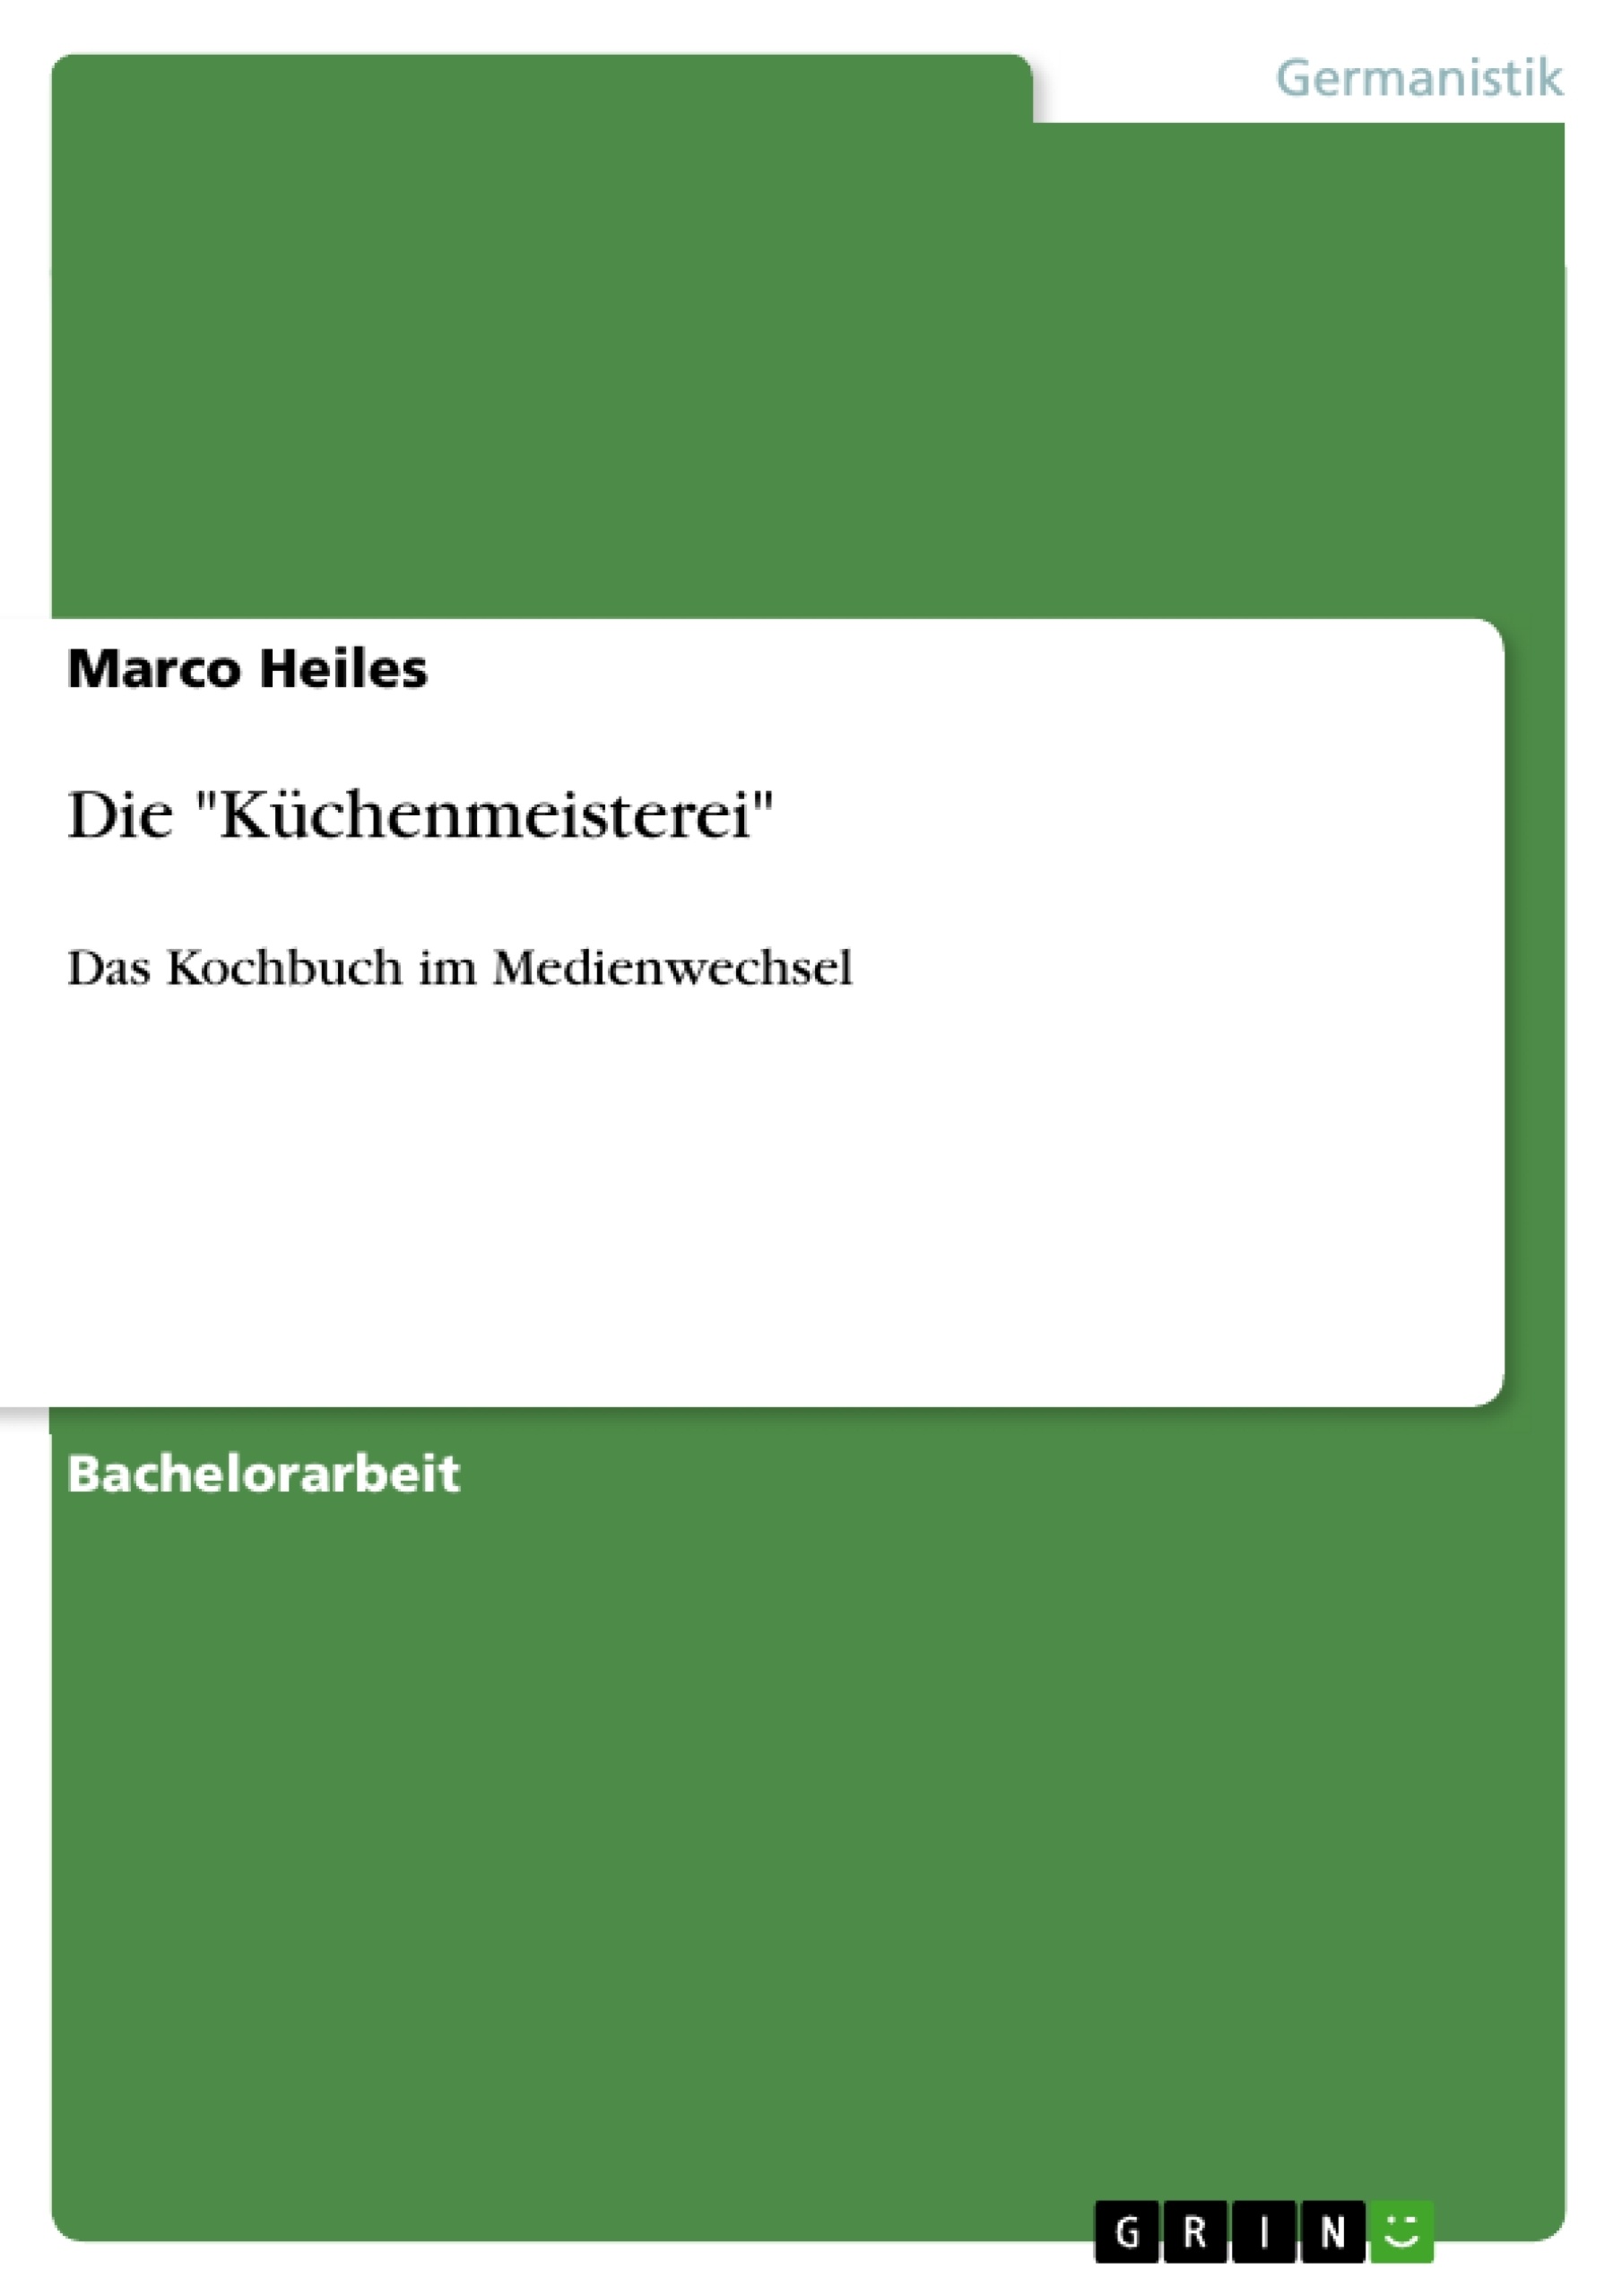 Título: Die "Küchenmeisterei"